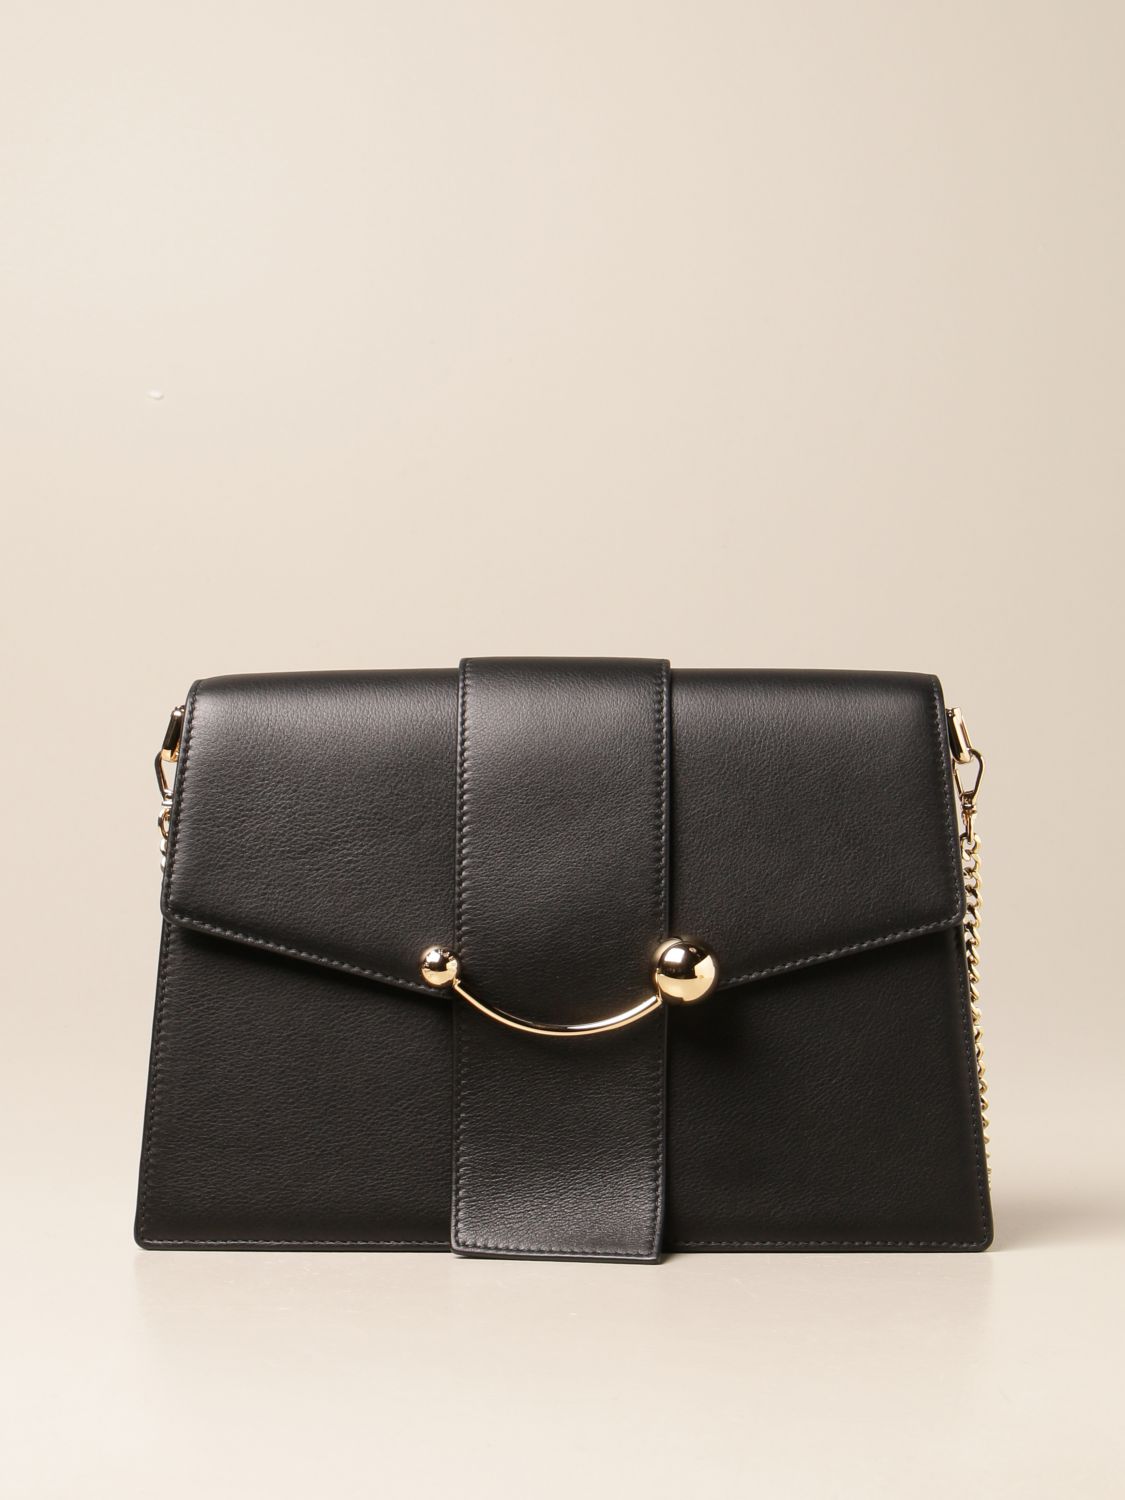 STRATHBERRY: Crescent leather bag - Black | Strathberry shoulder bag ...